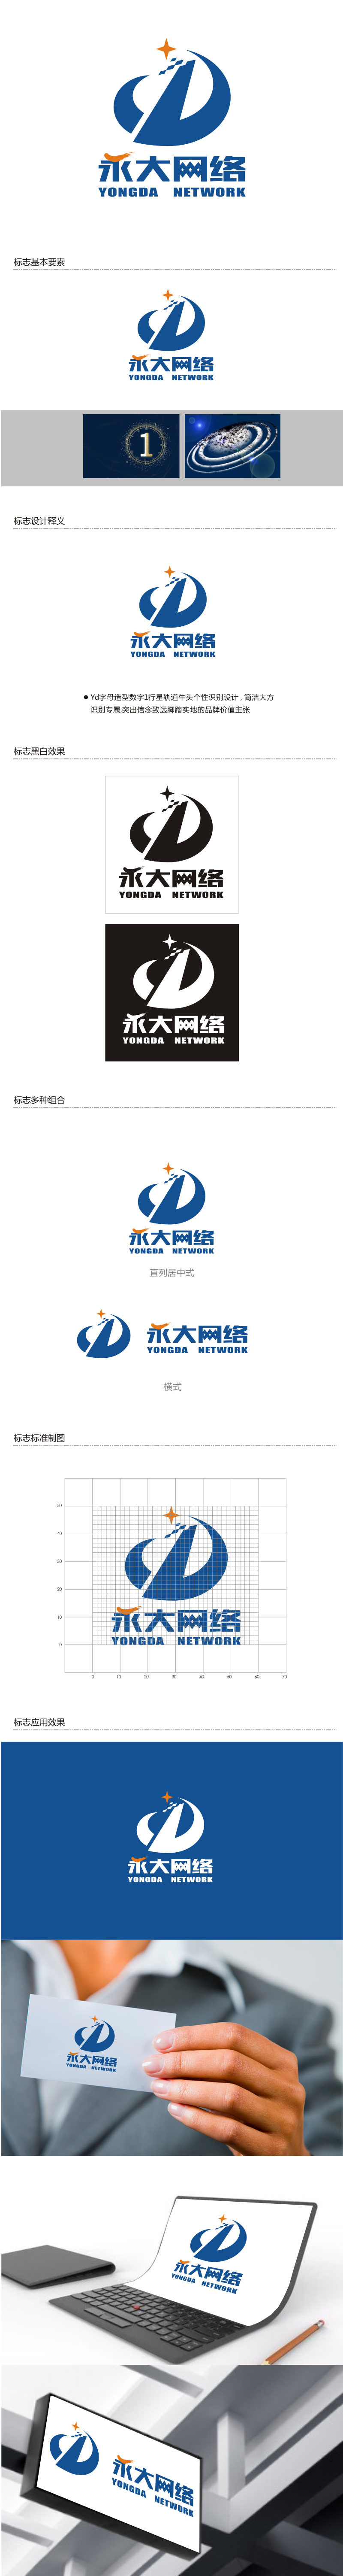 姜彦海的永大网络logo设计